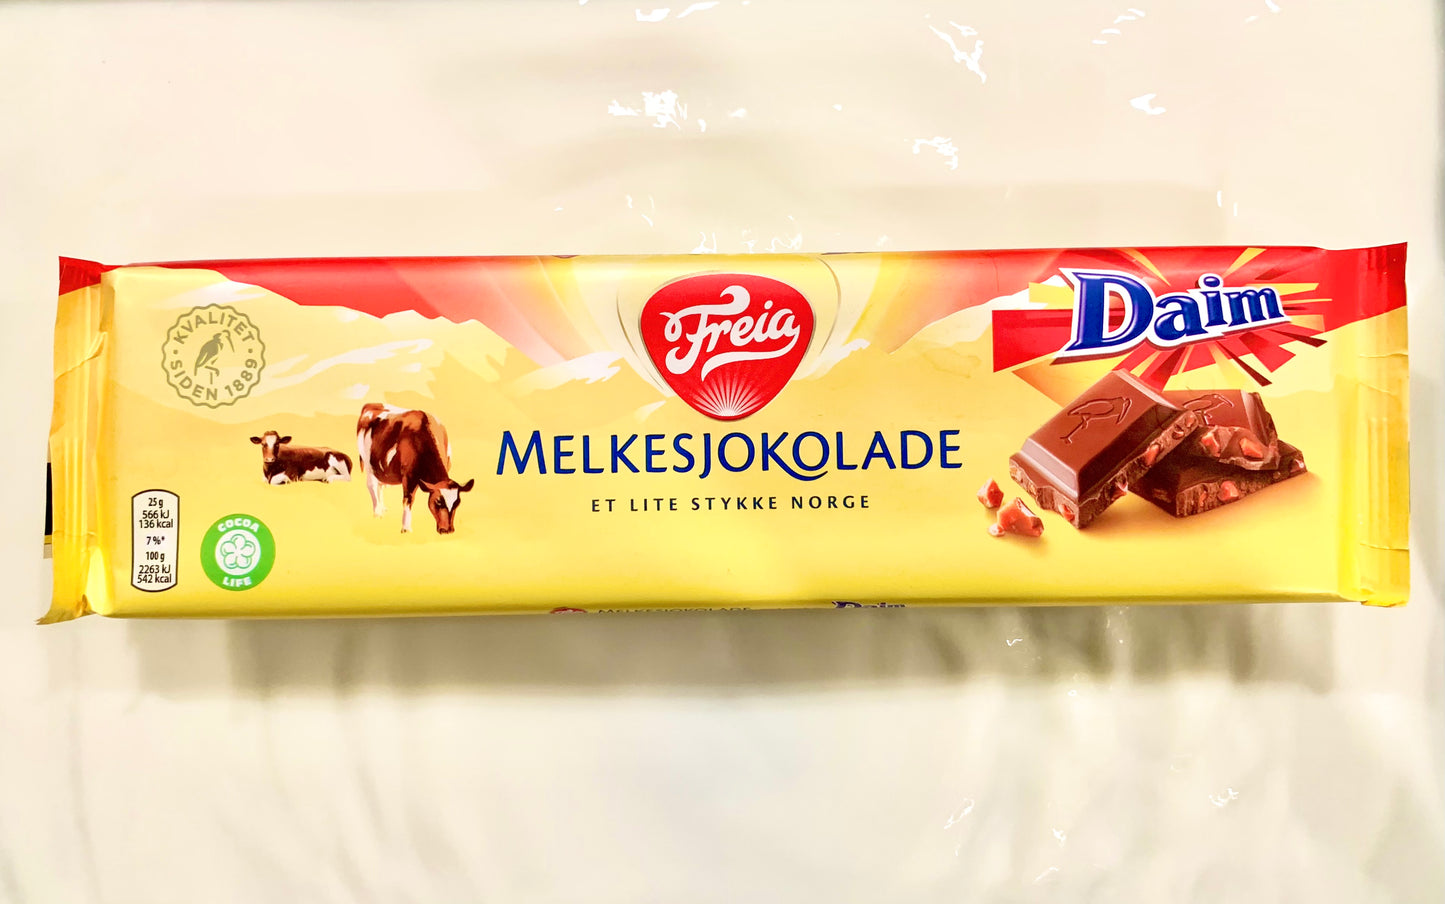 Freia Melkesjokolade Daim - Freia Milk Chocolate with Daim 200 grams (7 oz)